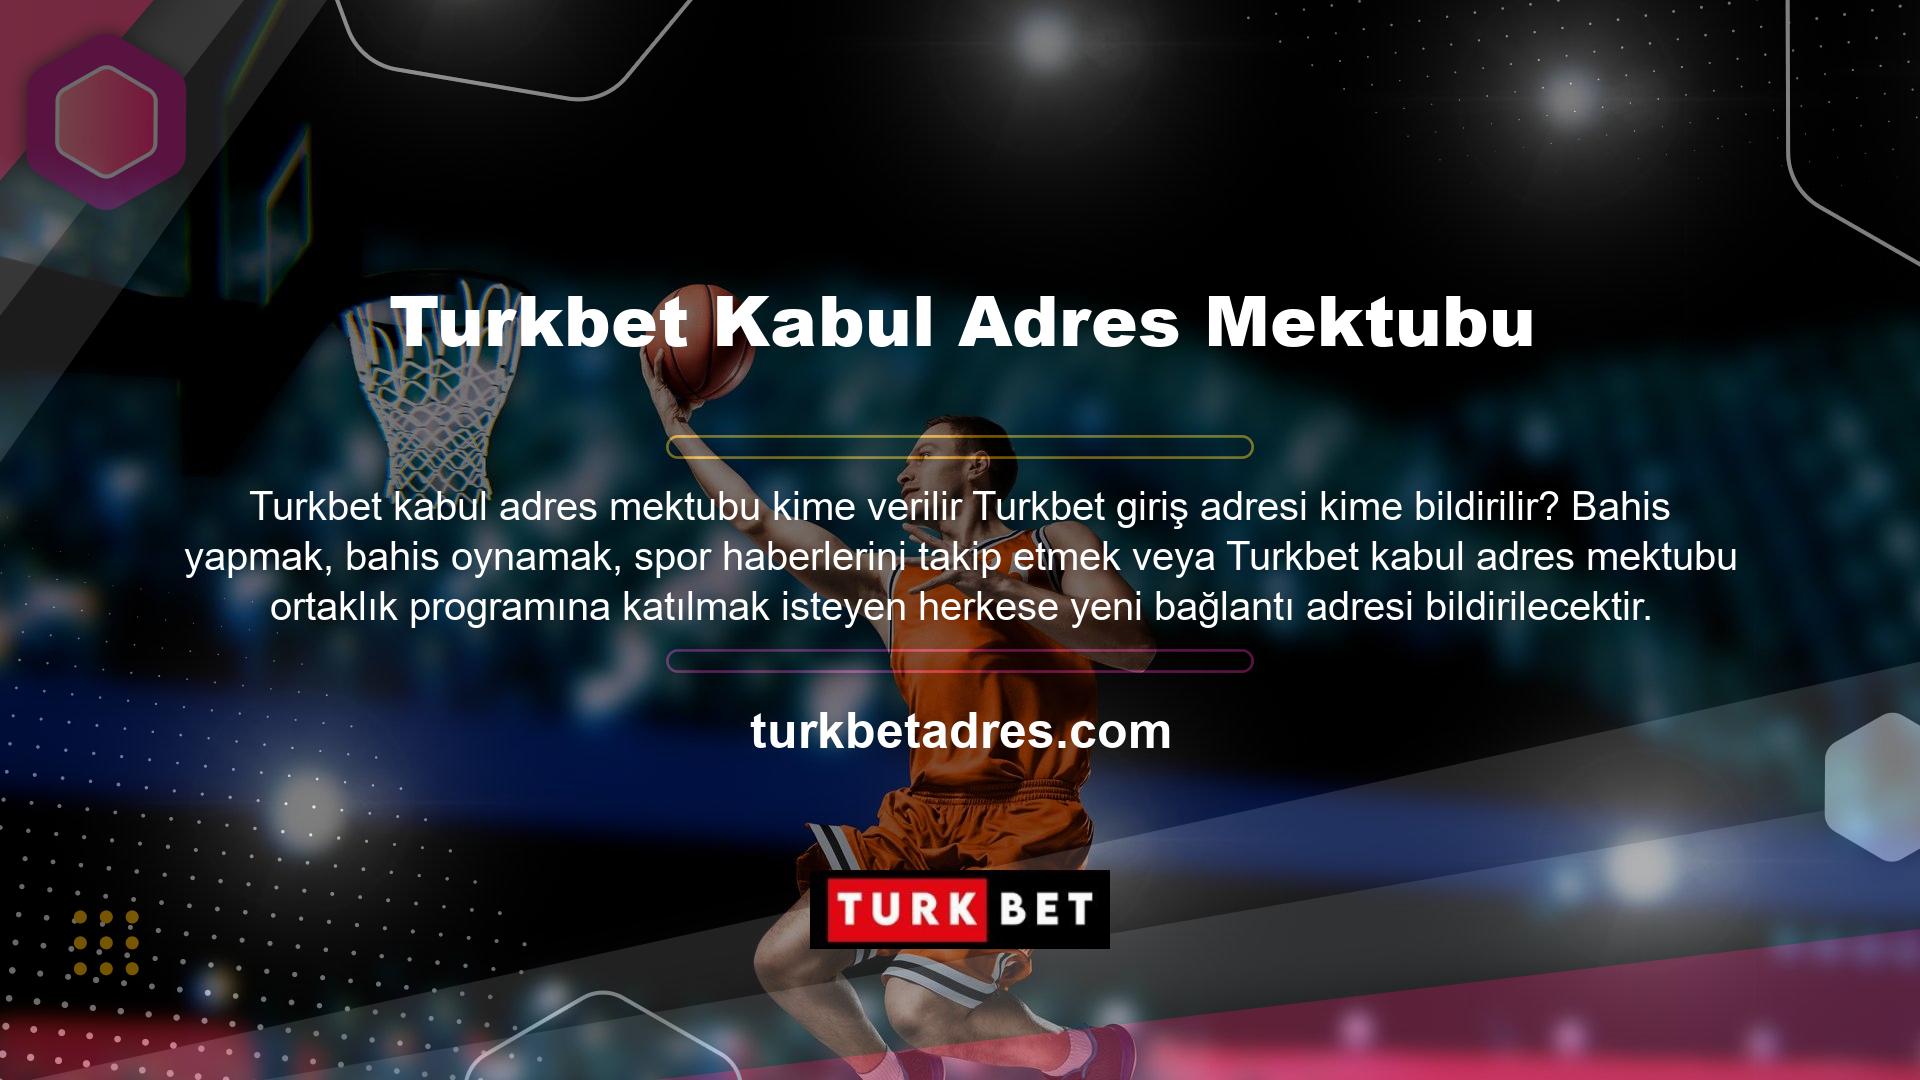 Turkbet Bahis Kayıt Adresi
Sorularınıza cevap verebilecek üyeler ve üye olmayanlar var